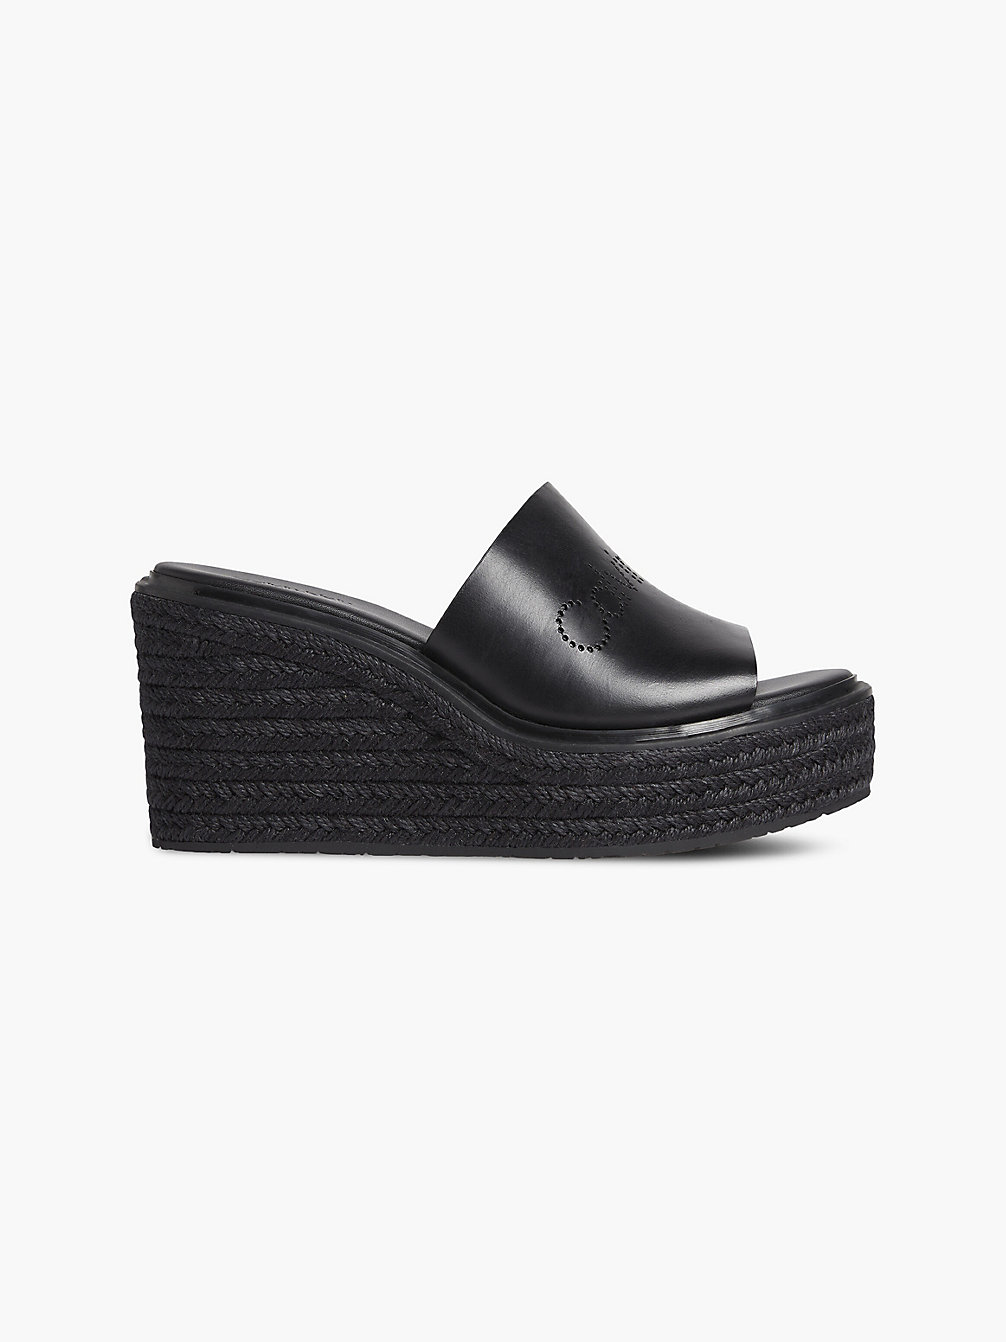 CK BLACK Leather Espadrille Wedge Sandals undefined women Calvin Klein